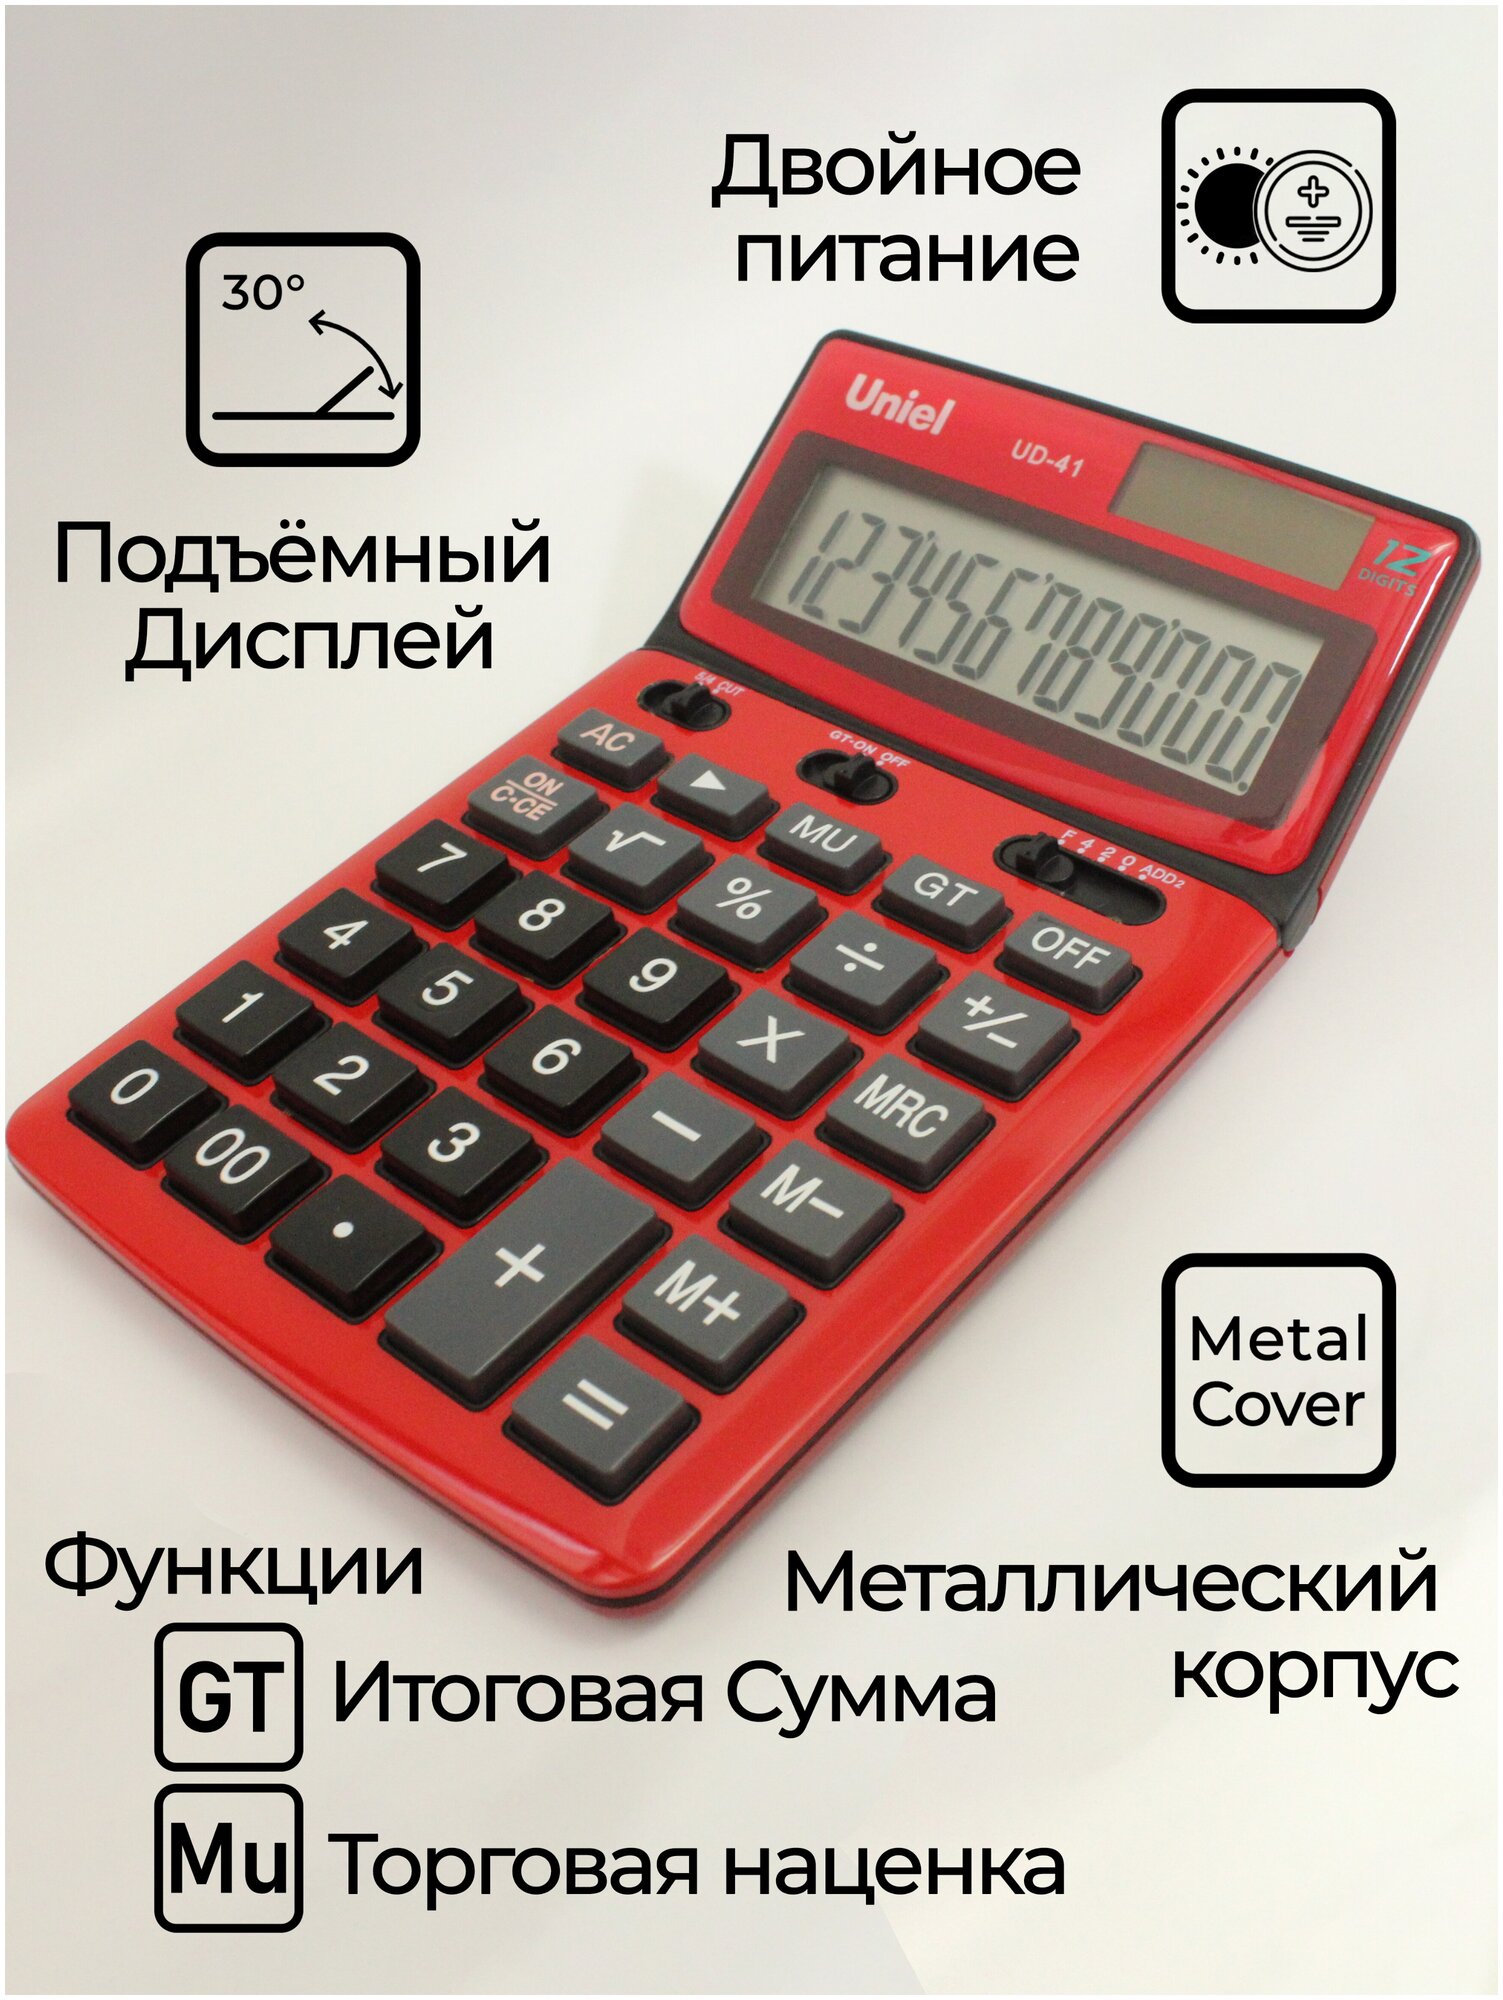 Калькулятор Uniel UD-41GM